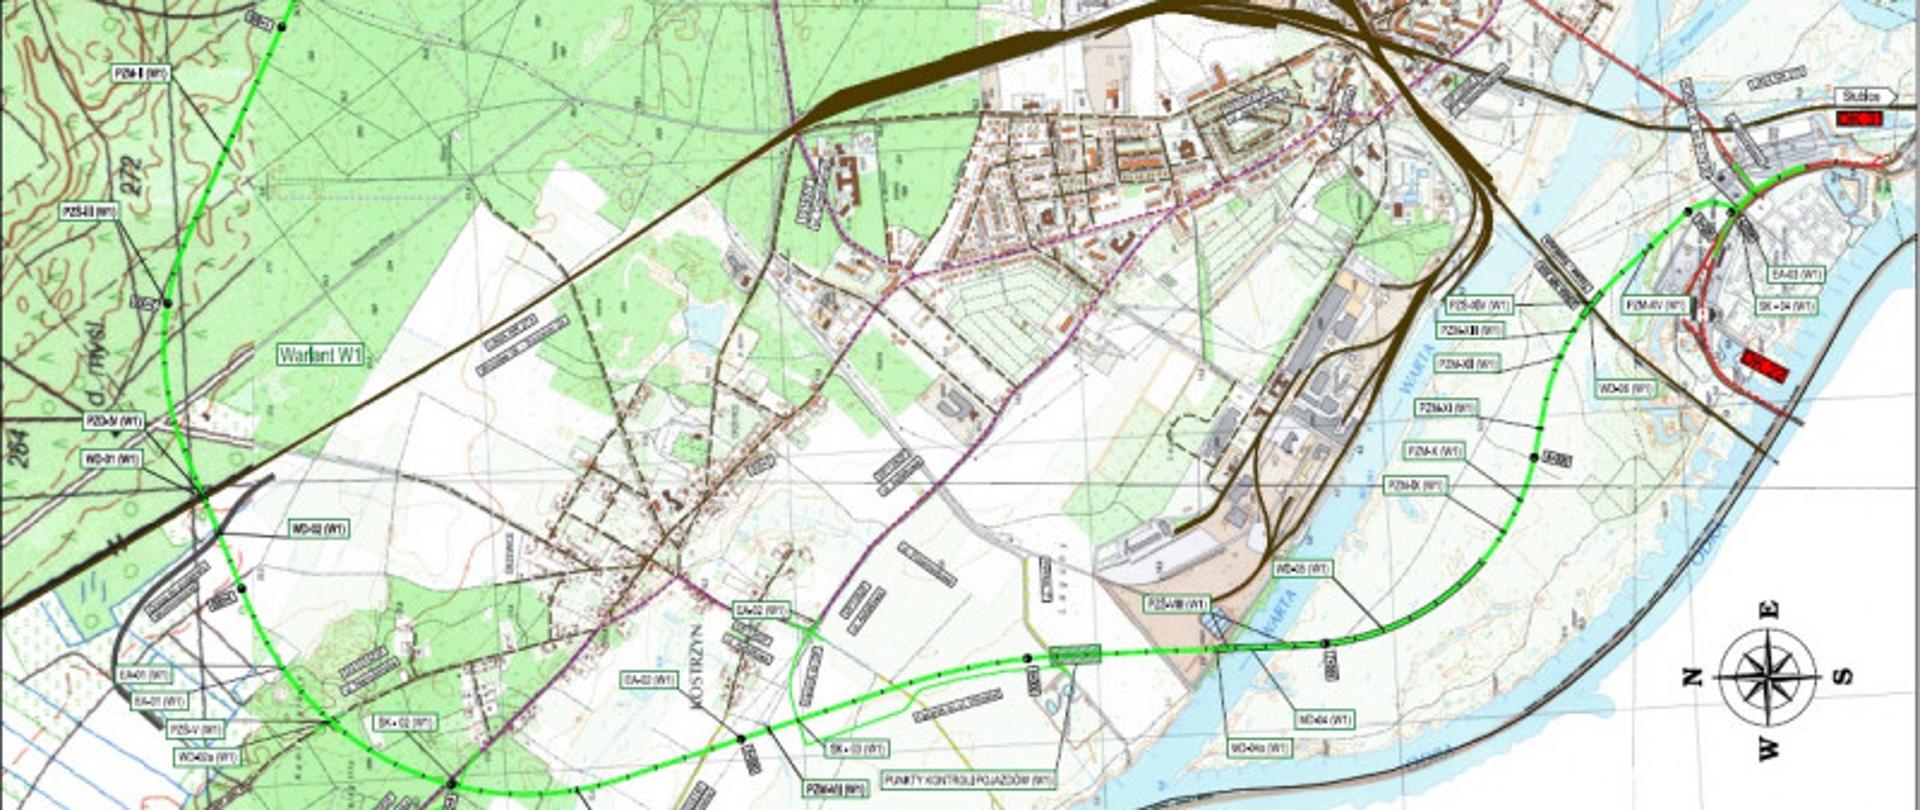 Plan orientacyjny z planowanym przebiegiem obwodnicy Kostrzyna nad Odrą, wariant poprowadzony po stronie zachodniej miasta.